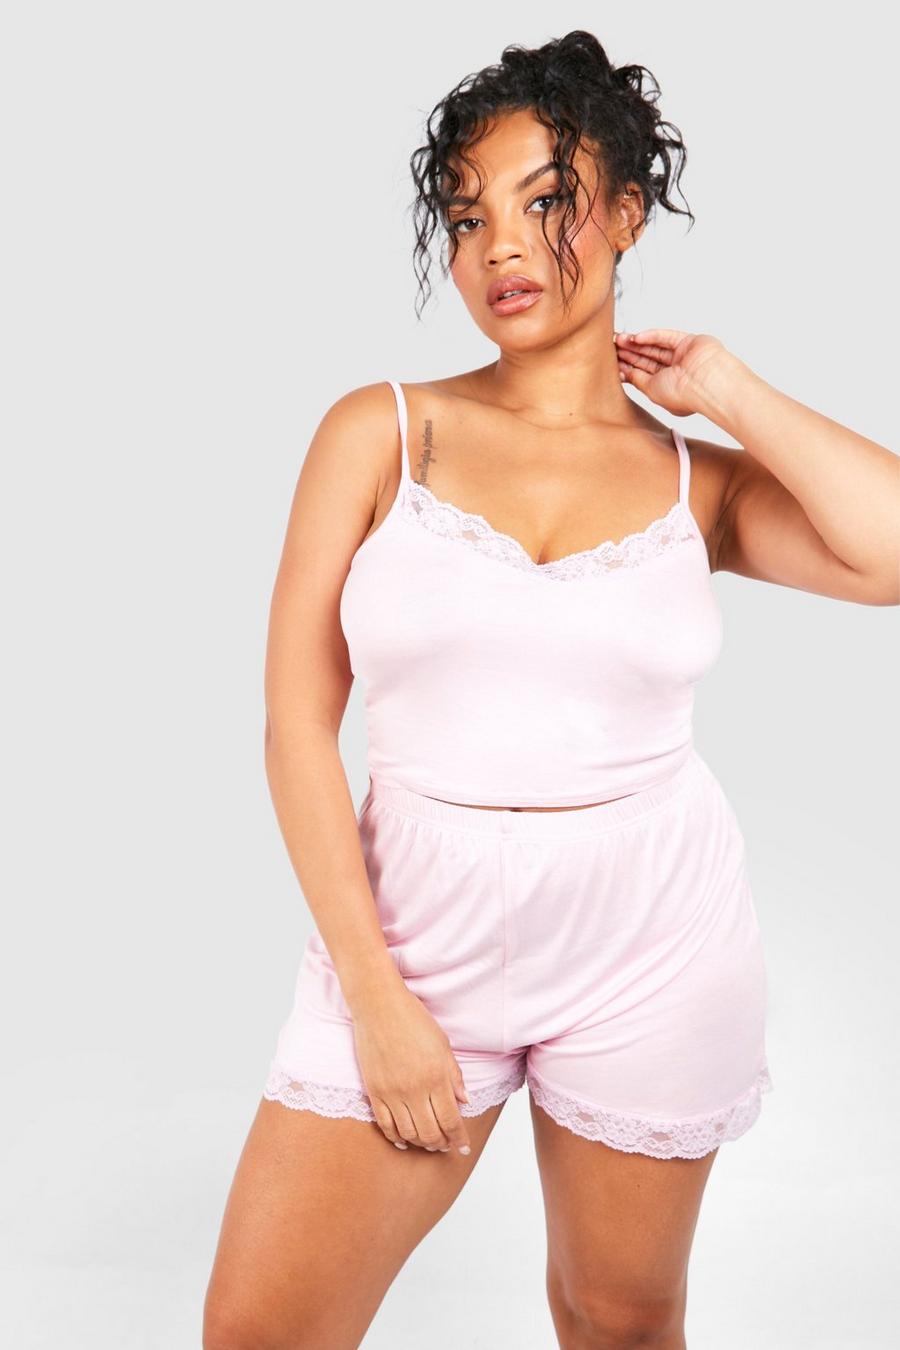 Unique Bargains Women's Plus Size 2 Piece Lace Polka Dots Matching